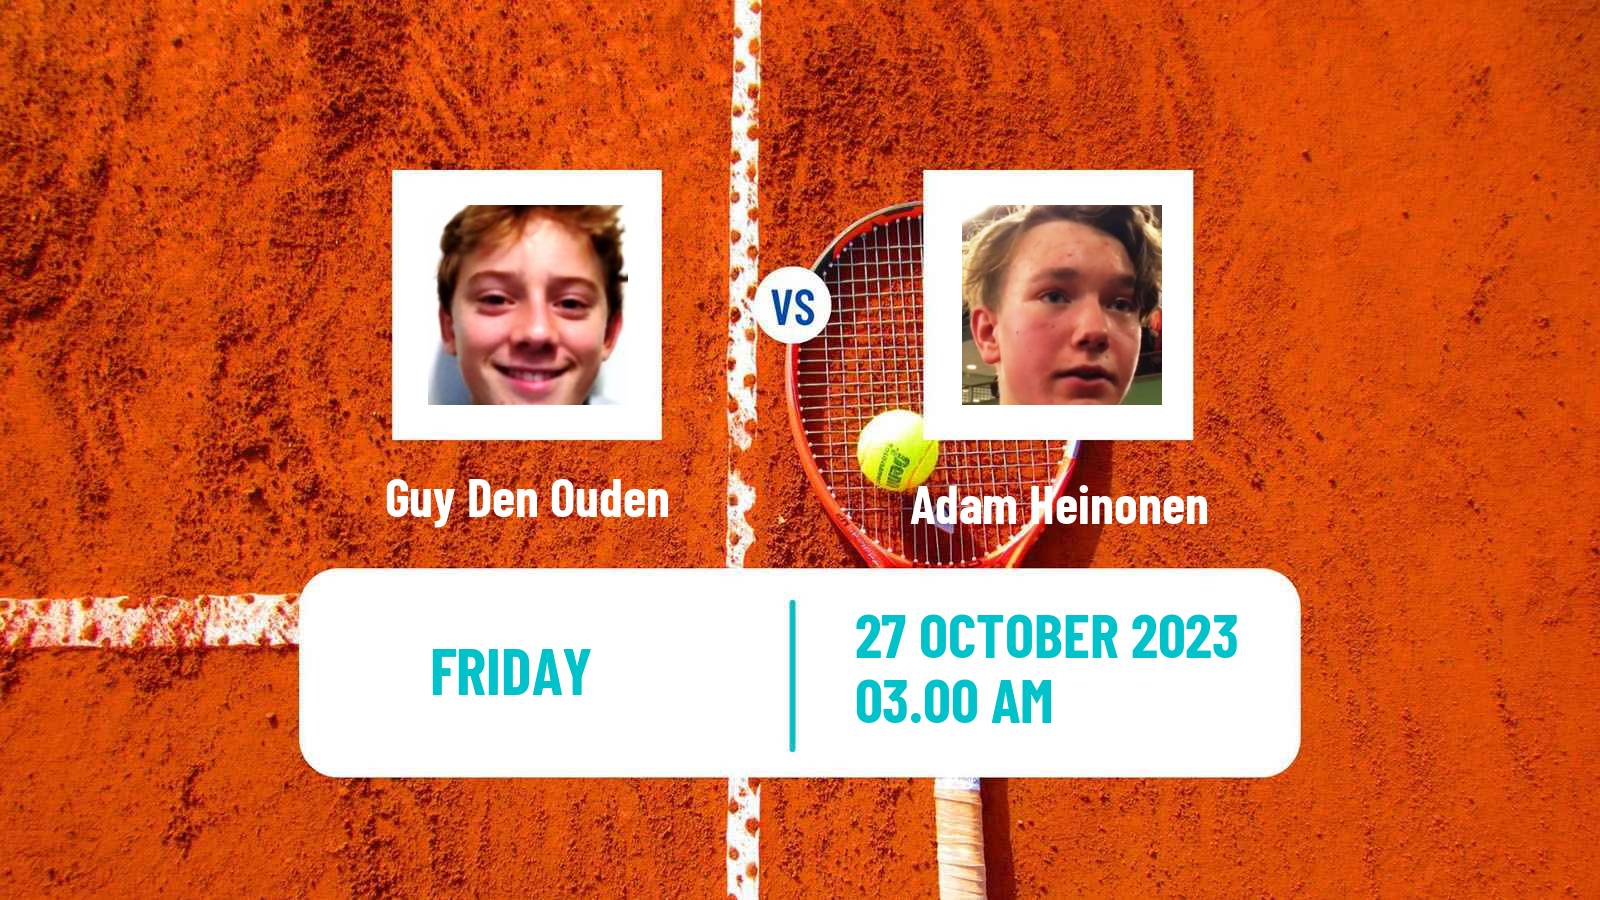 Tennis ITF M15 Heraklion 4 Men Guy Den Ouden - Adam Heinonen